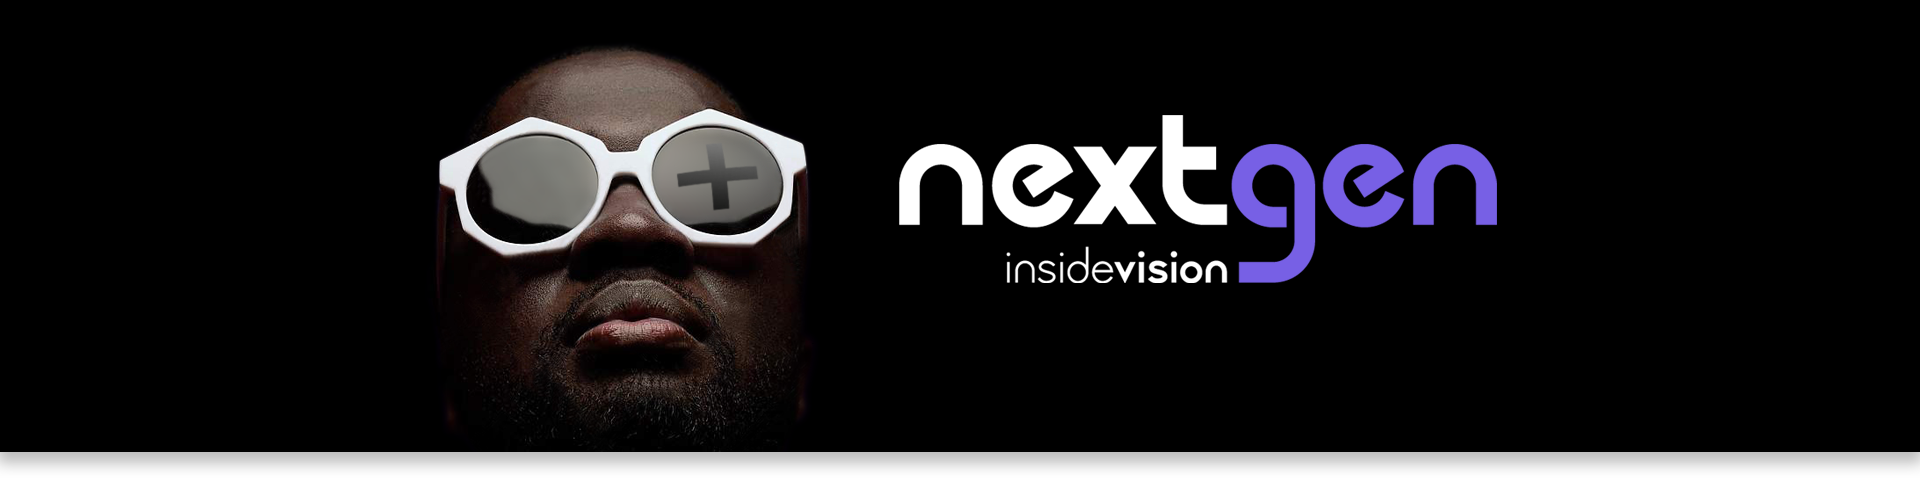 NextGen - Le futur se dévoile - insideONE+